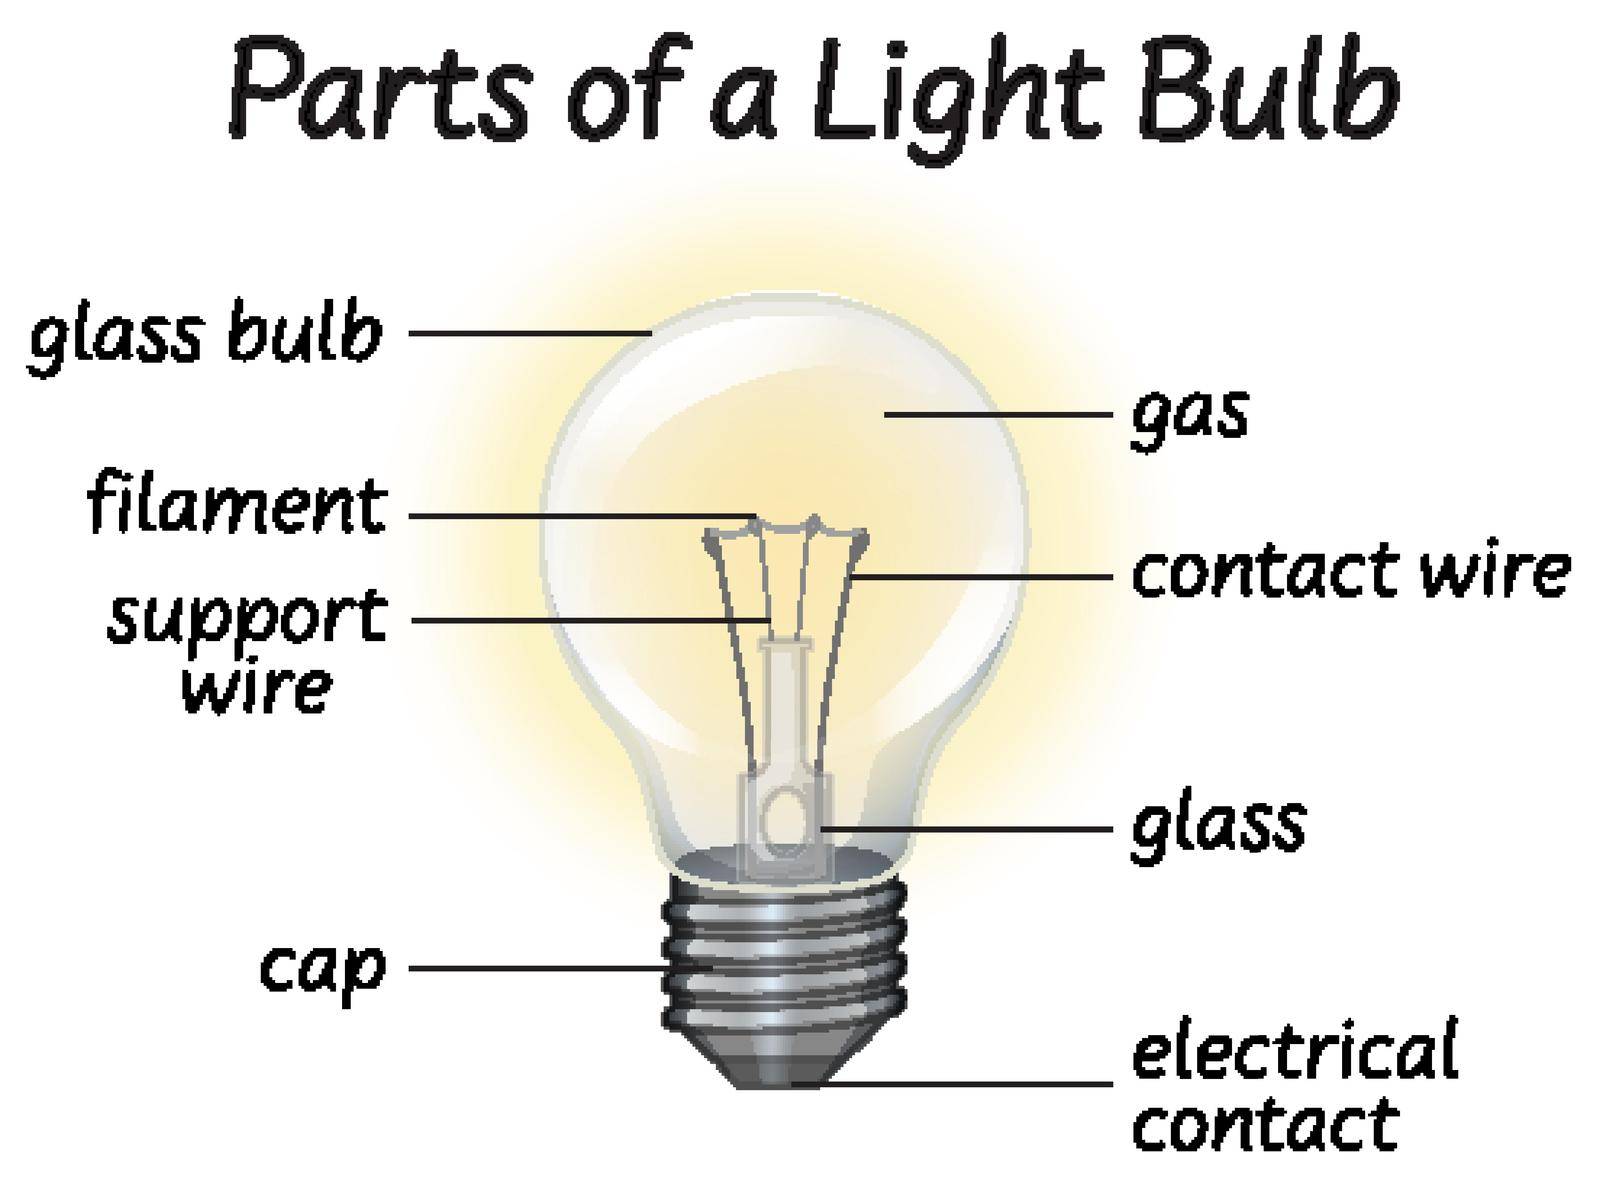 Part if lightbulb diagram illustration